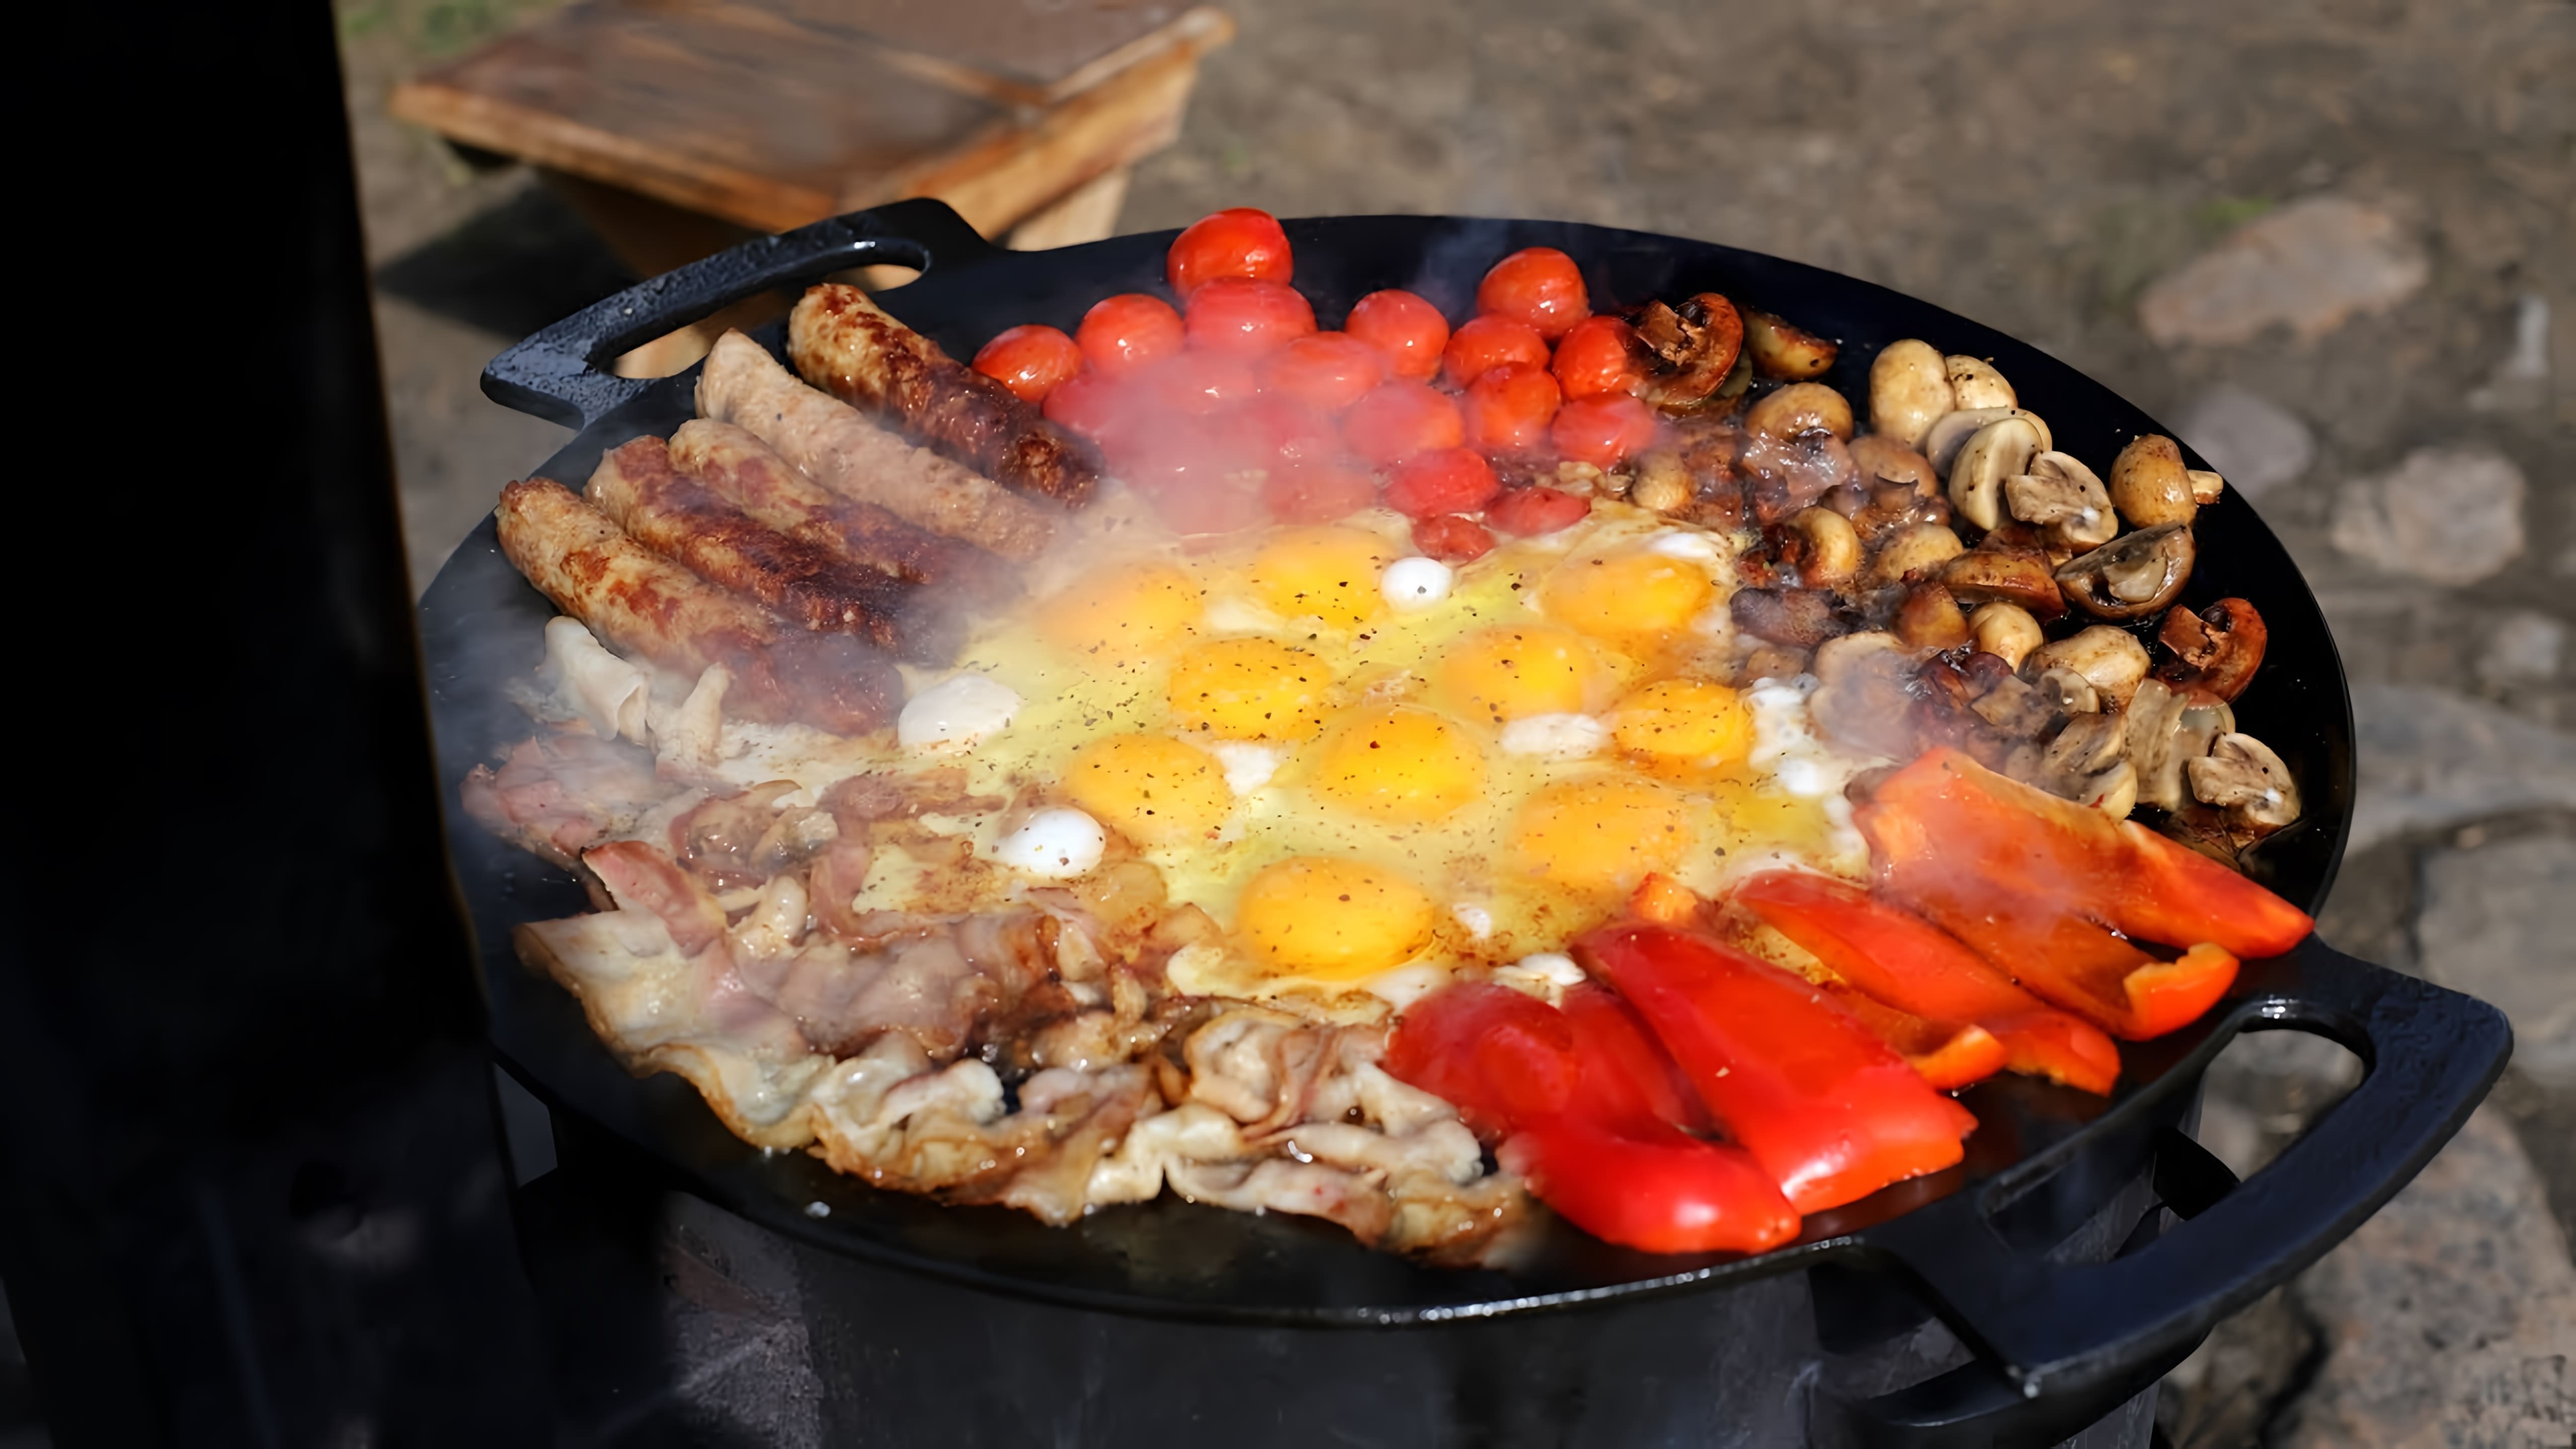 "Богатырский завтрак на сковороде" - это видео-ролик, который демонстрирует процесс приготовления вкусного и питательного завтрака на сковороде